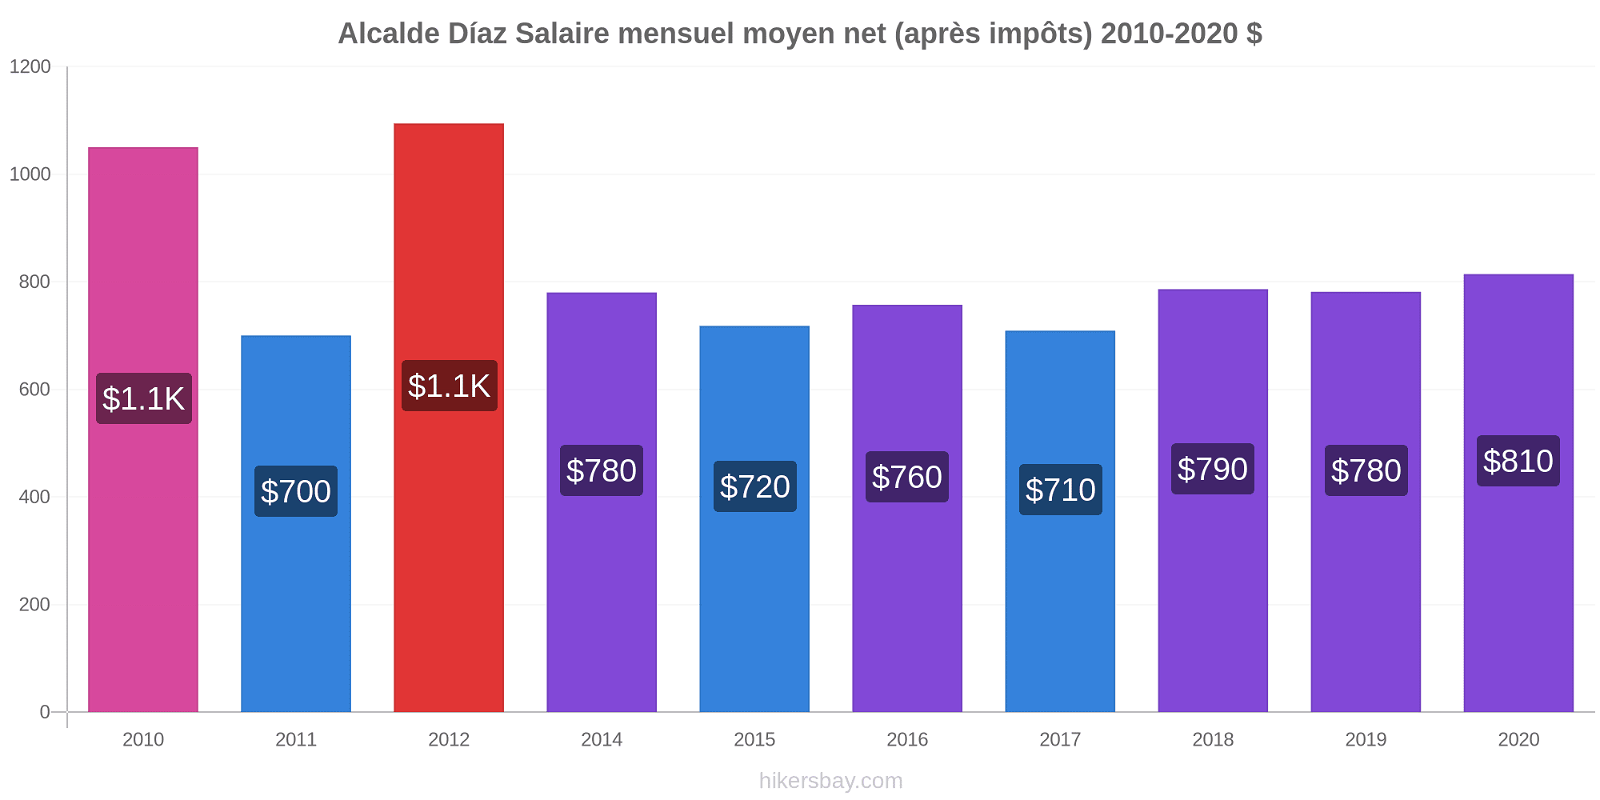 Alcalde Díaz changements de prix Salaire mensuel Net (après impôts) hikersbay.com